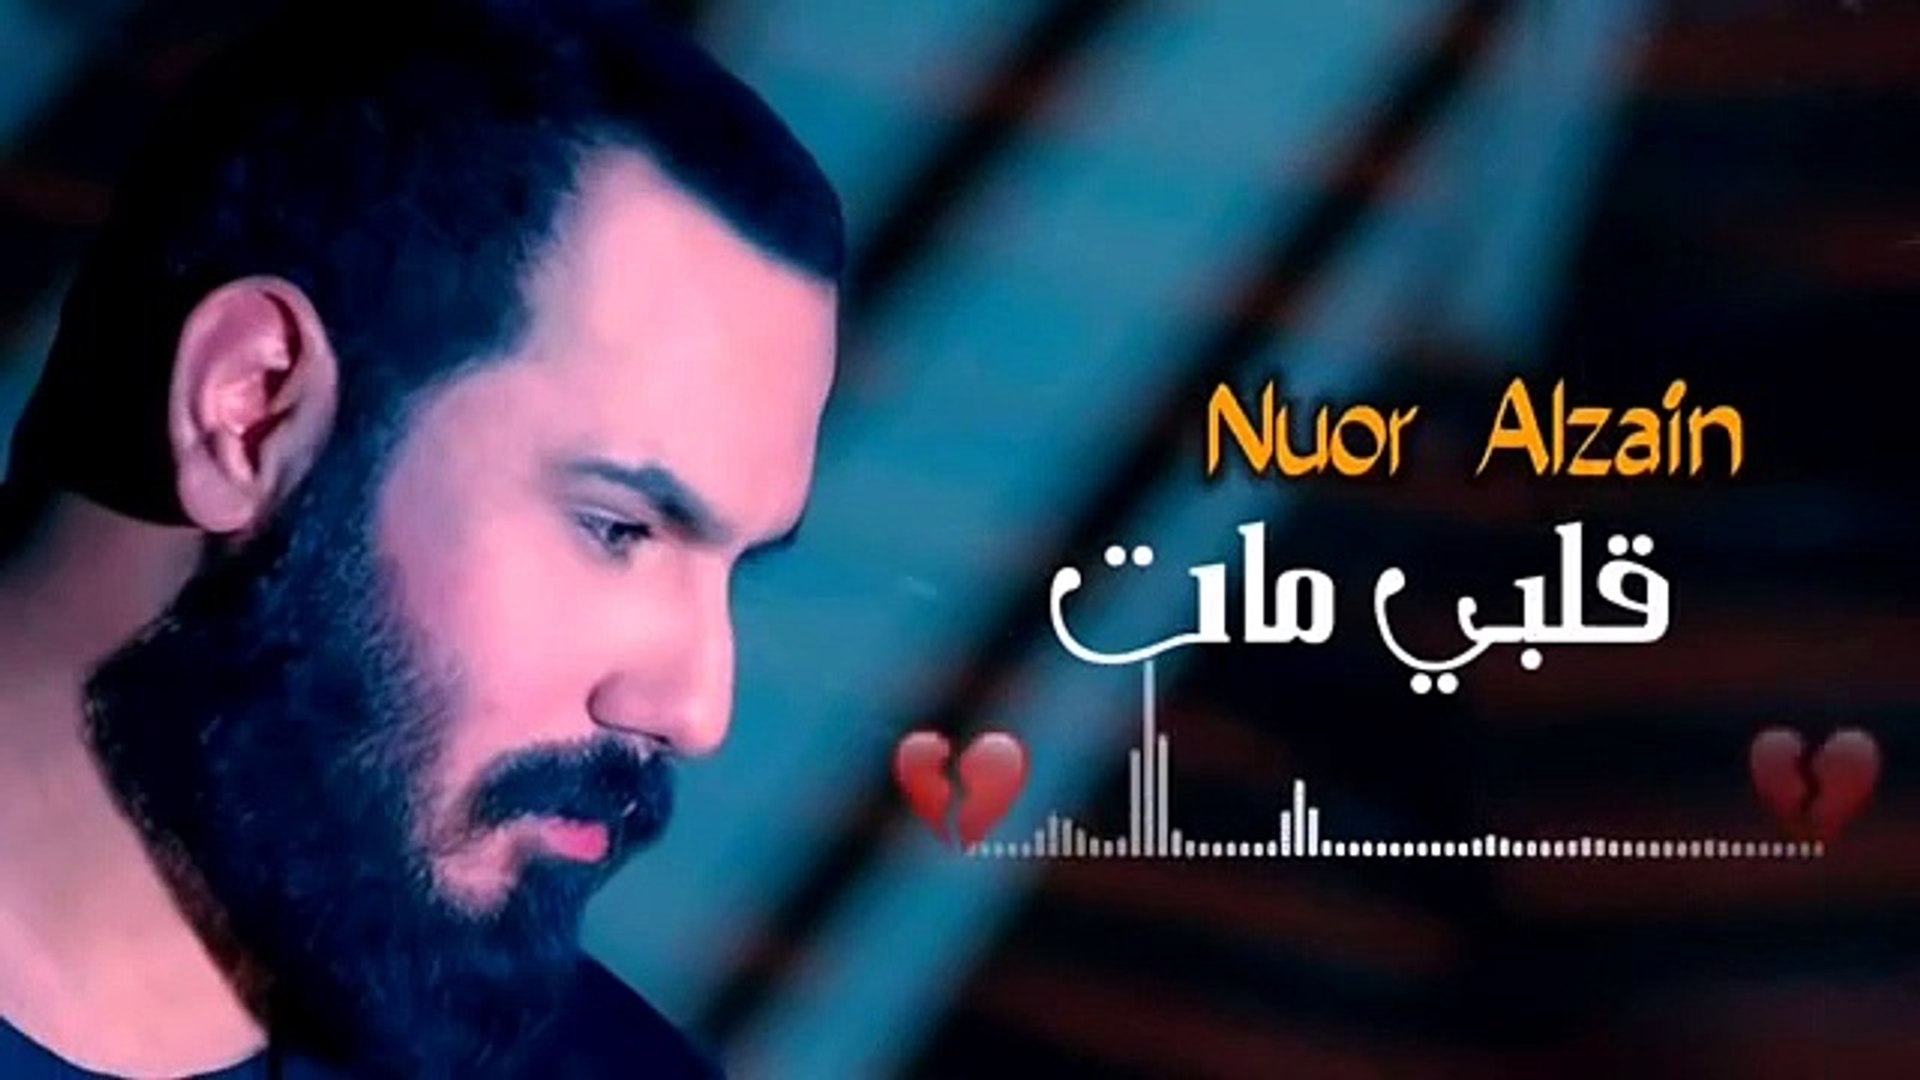 نور الزين - قلبي مات - حصريا ( 2020 ) اغاني عراقيه حزينه توجع القلب NOOR  AIZEIN - video Dailymotion